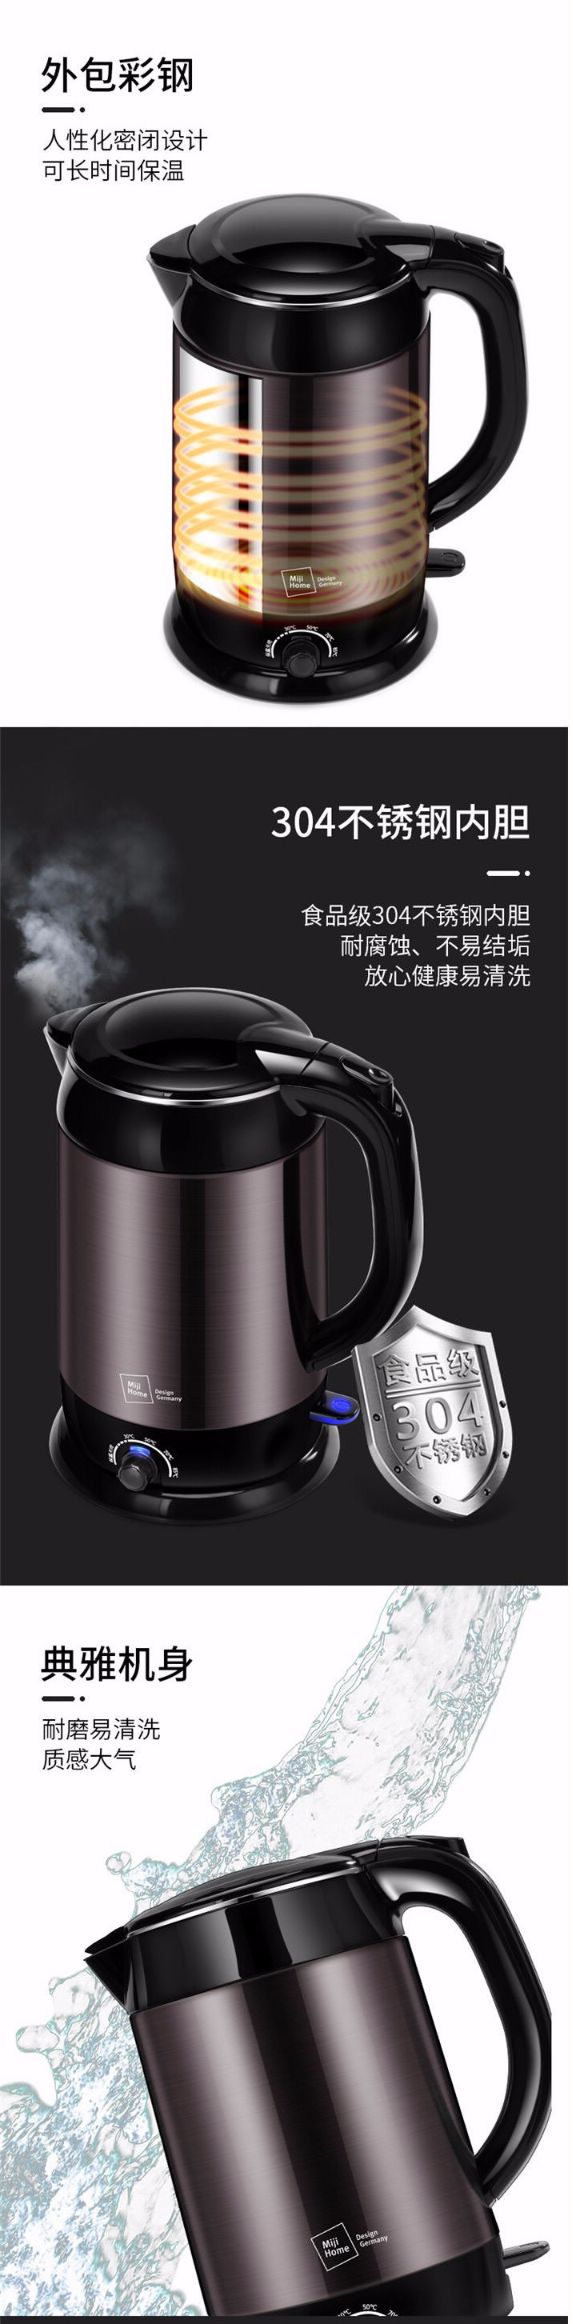 米技多段保温烧水电热水壶HK-K005详情图3